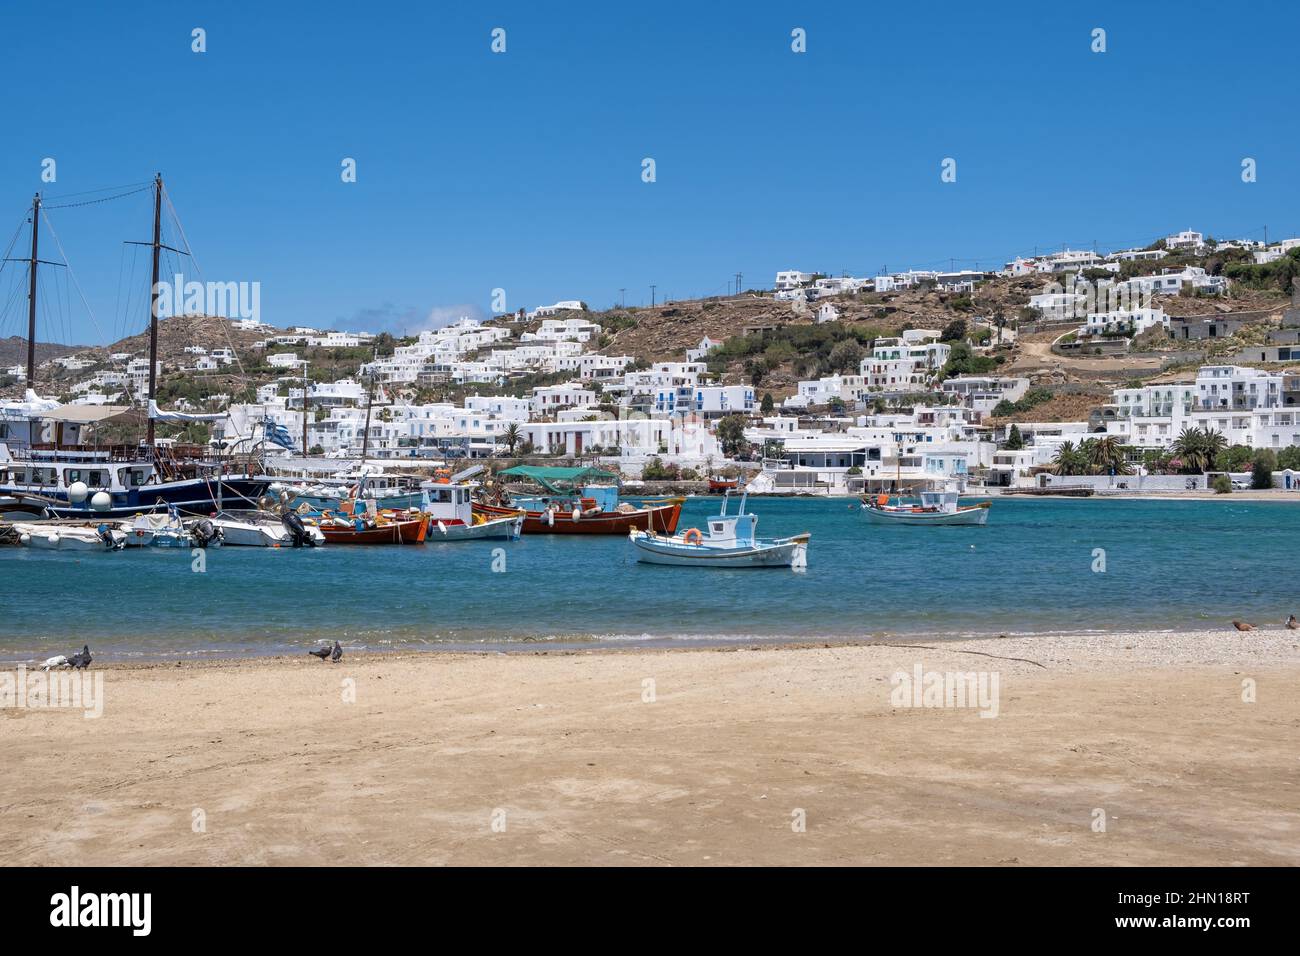 Mikonos, Cyclades, Grèce. Bateau amarré au port de Mykonos, bateau dans la mer Égée, bâtiment en bord de mer, fond bleu ciel. Oiseau sur la plage vide ensoleillé da Banque D'Images